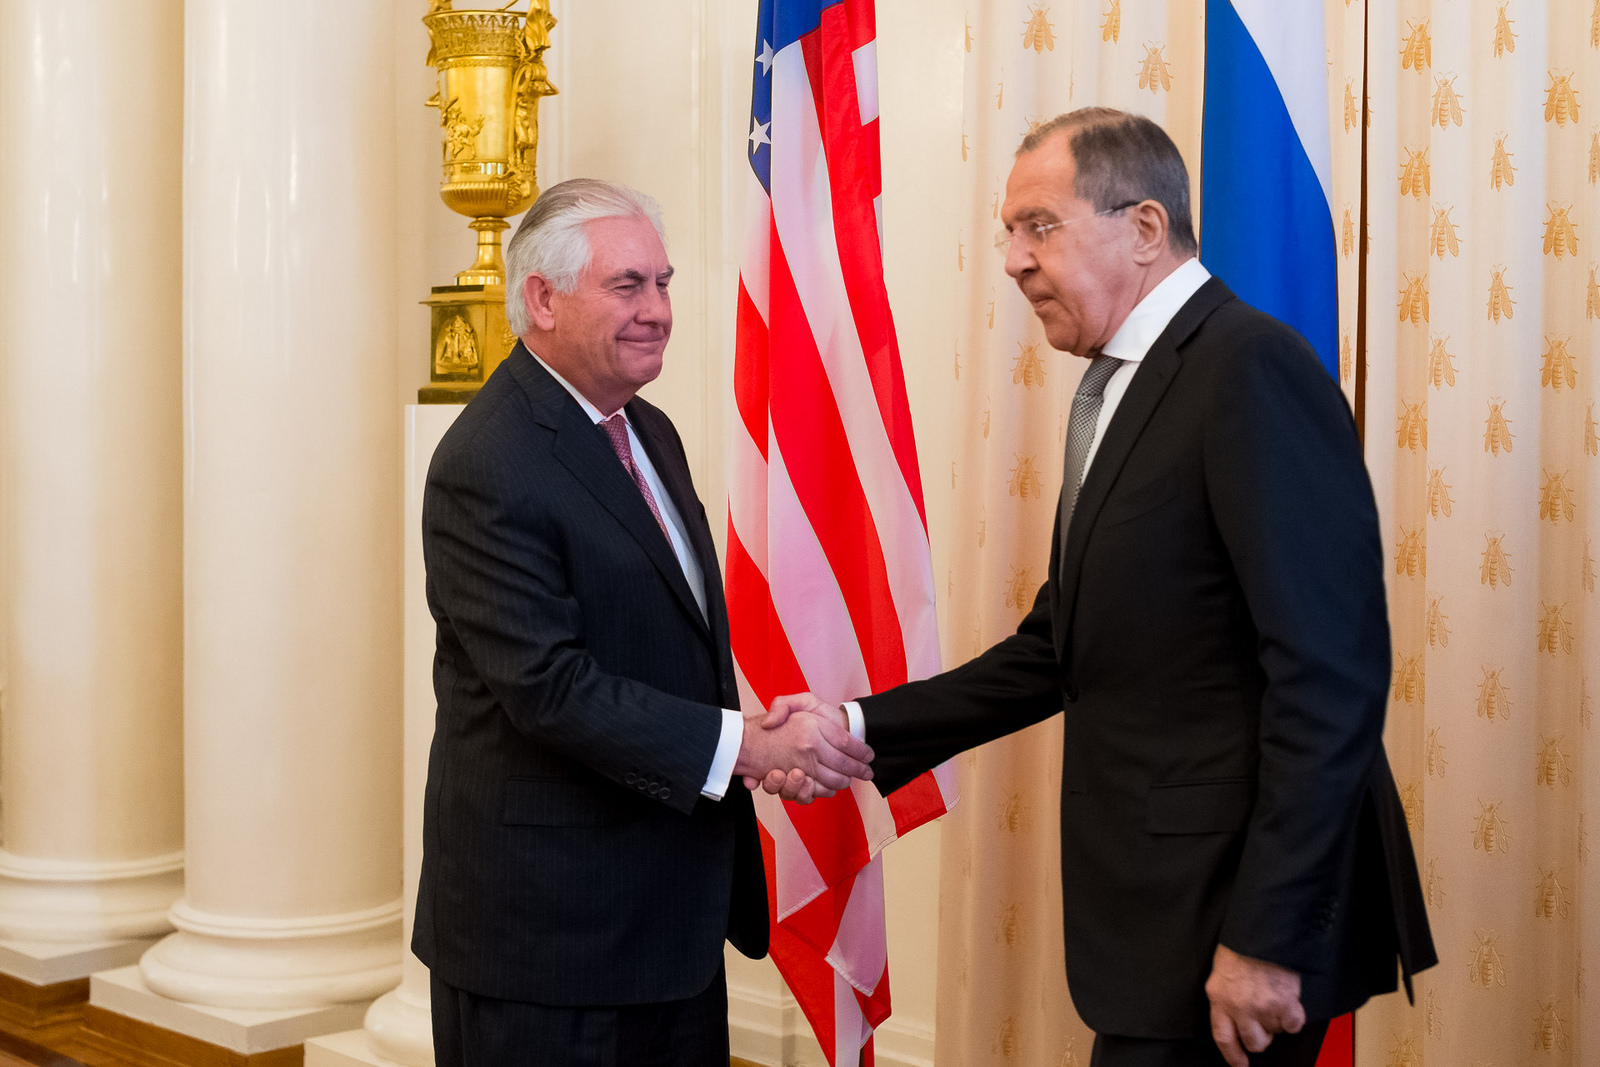 Шефовите на дипломатиите на Русија и на САД Сергеј Лавров и Рекс Тилерсон. 12 април 2017, Москва Русија.